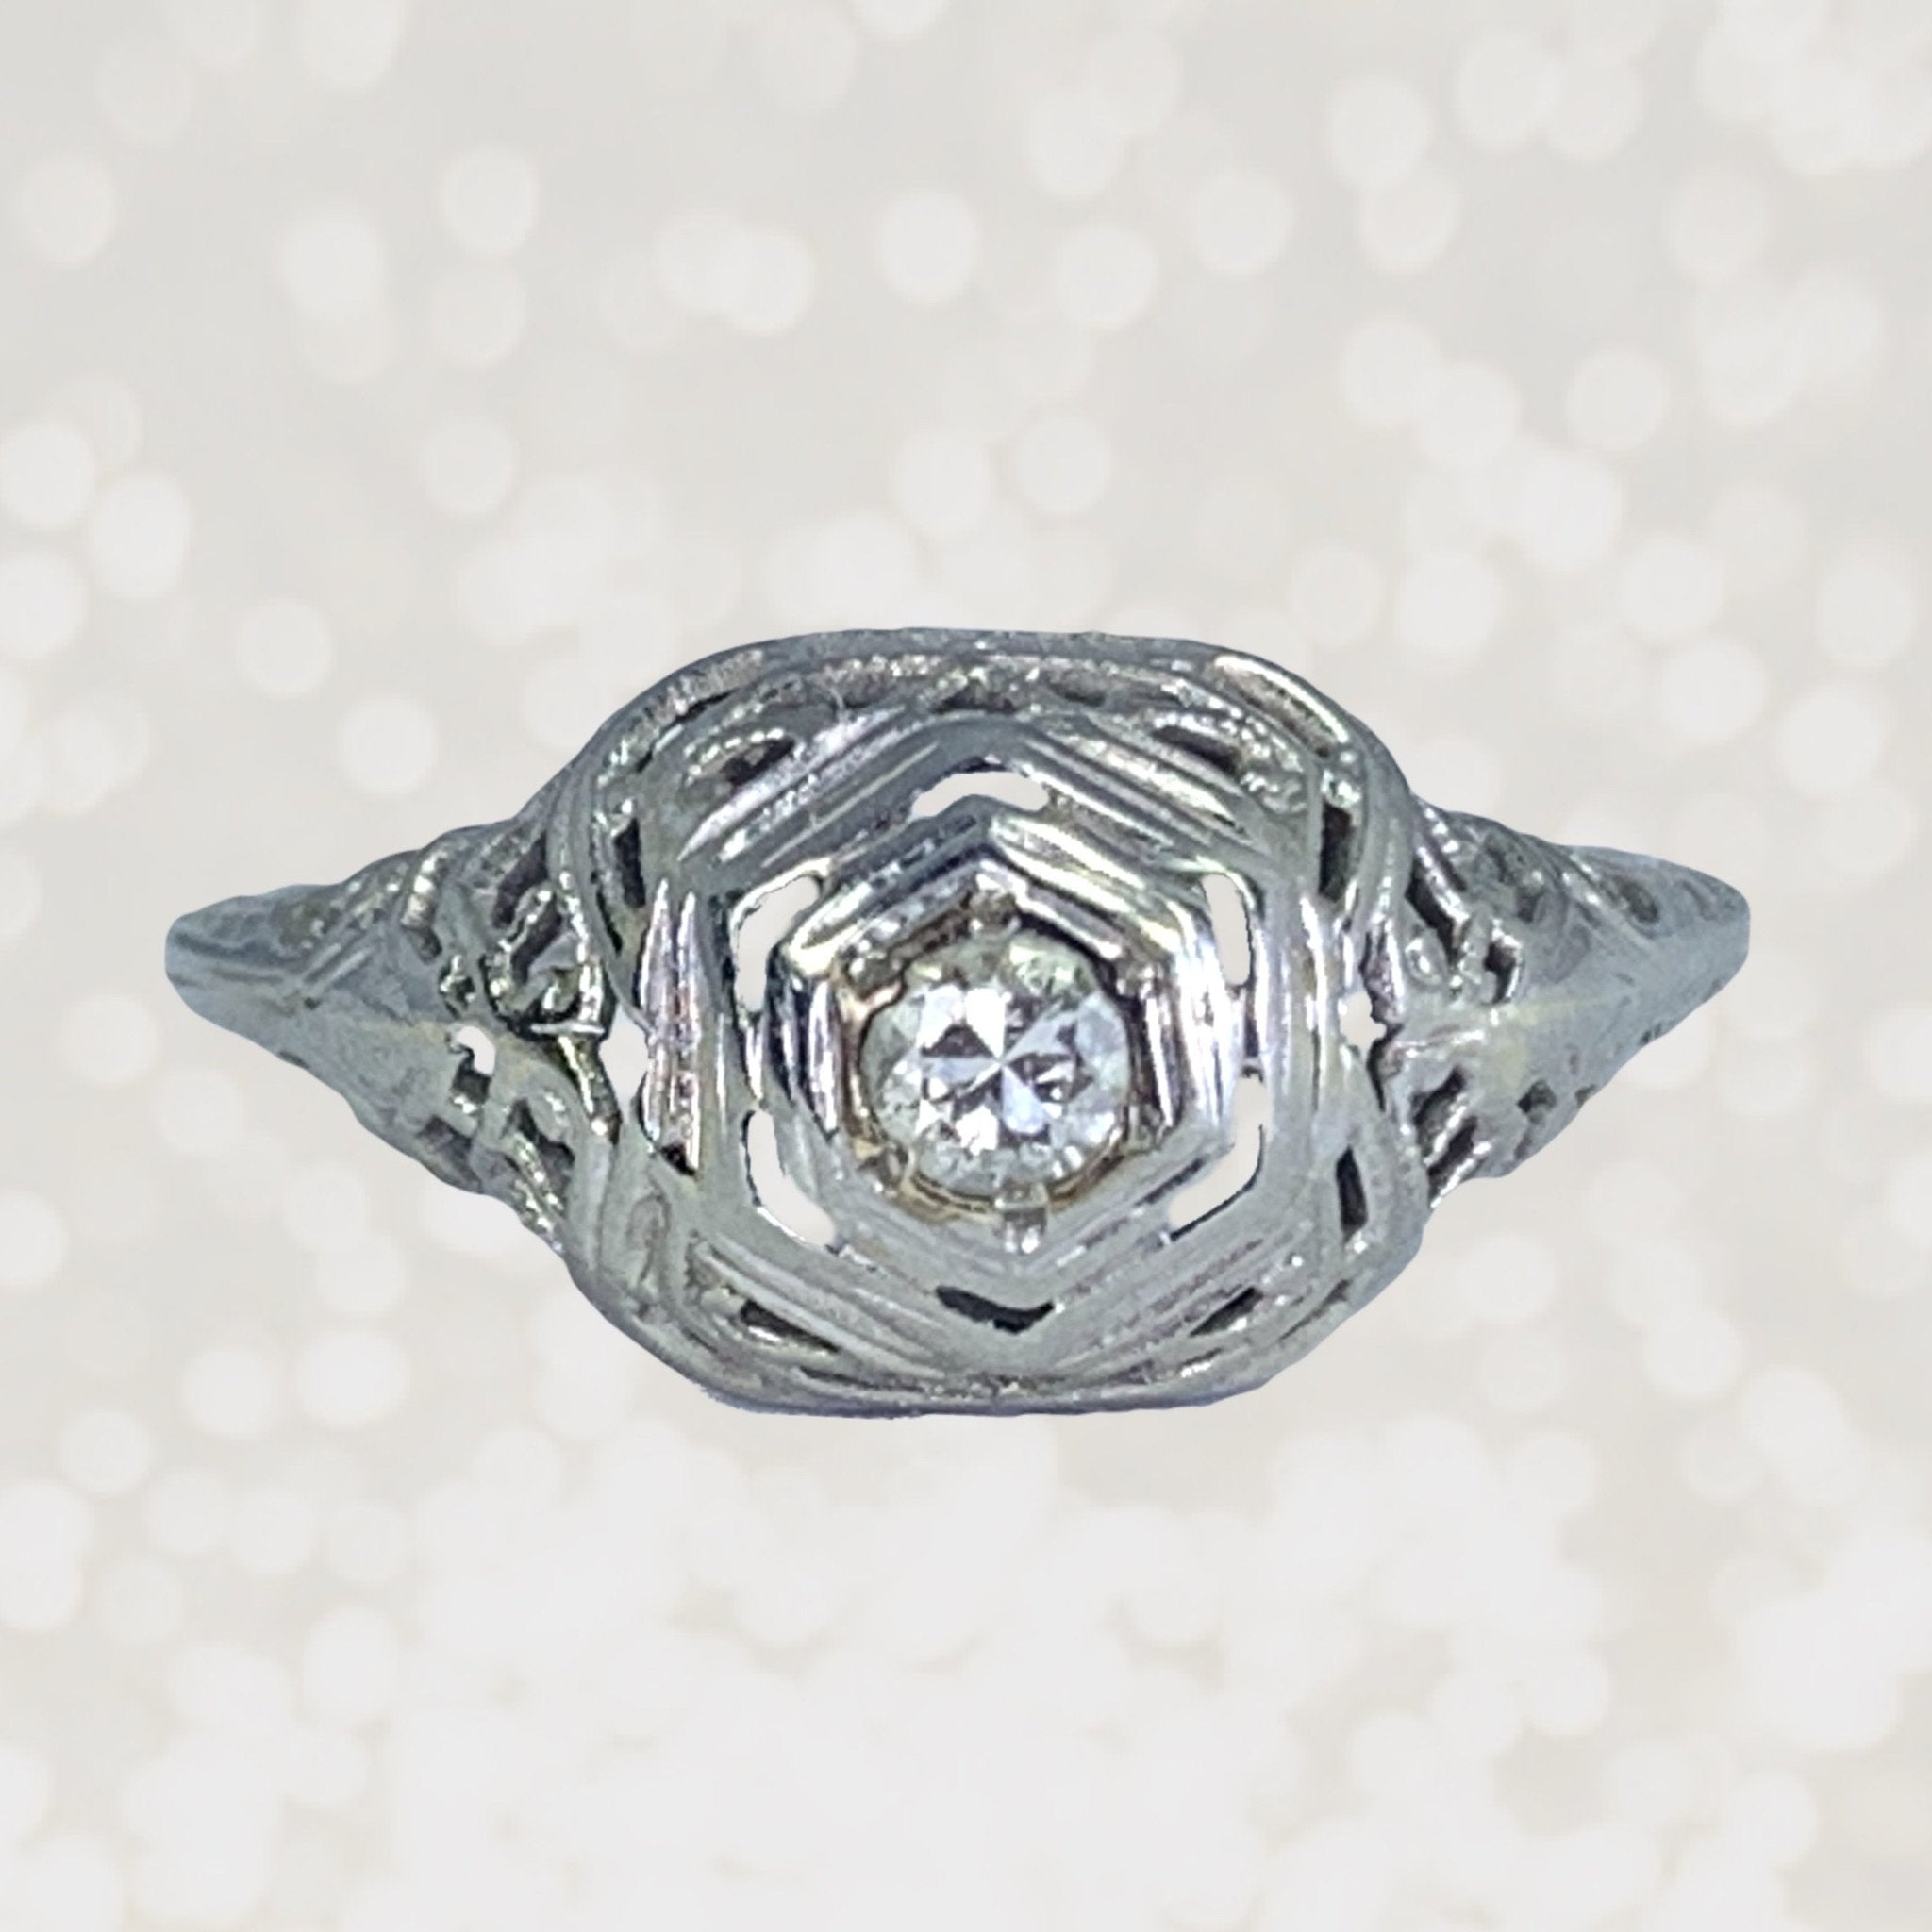 1920S Art Deco Diamond Engagement Ring In A 18K White Gold Filigree Se